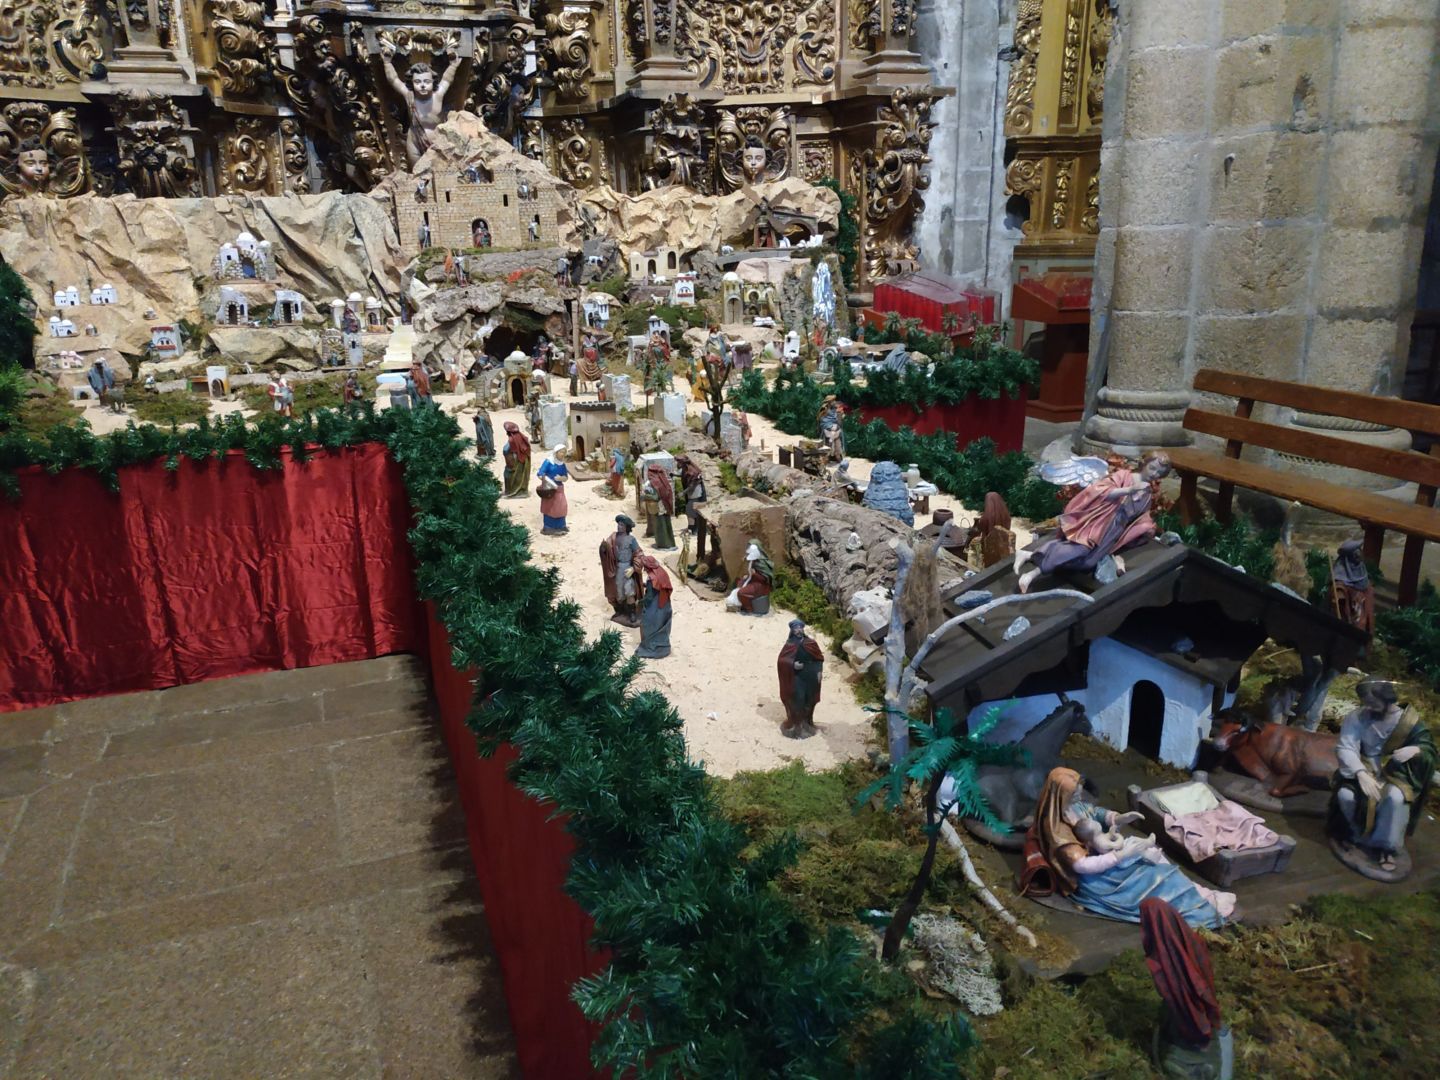 Exposición "Belenes del mundo" en la Catedral de Tui, organizada por la Asociación de Amigos de la Catedral de Tui.